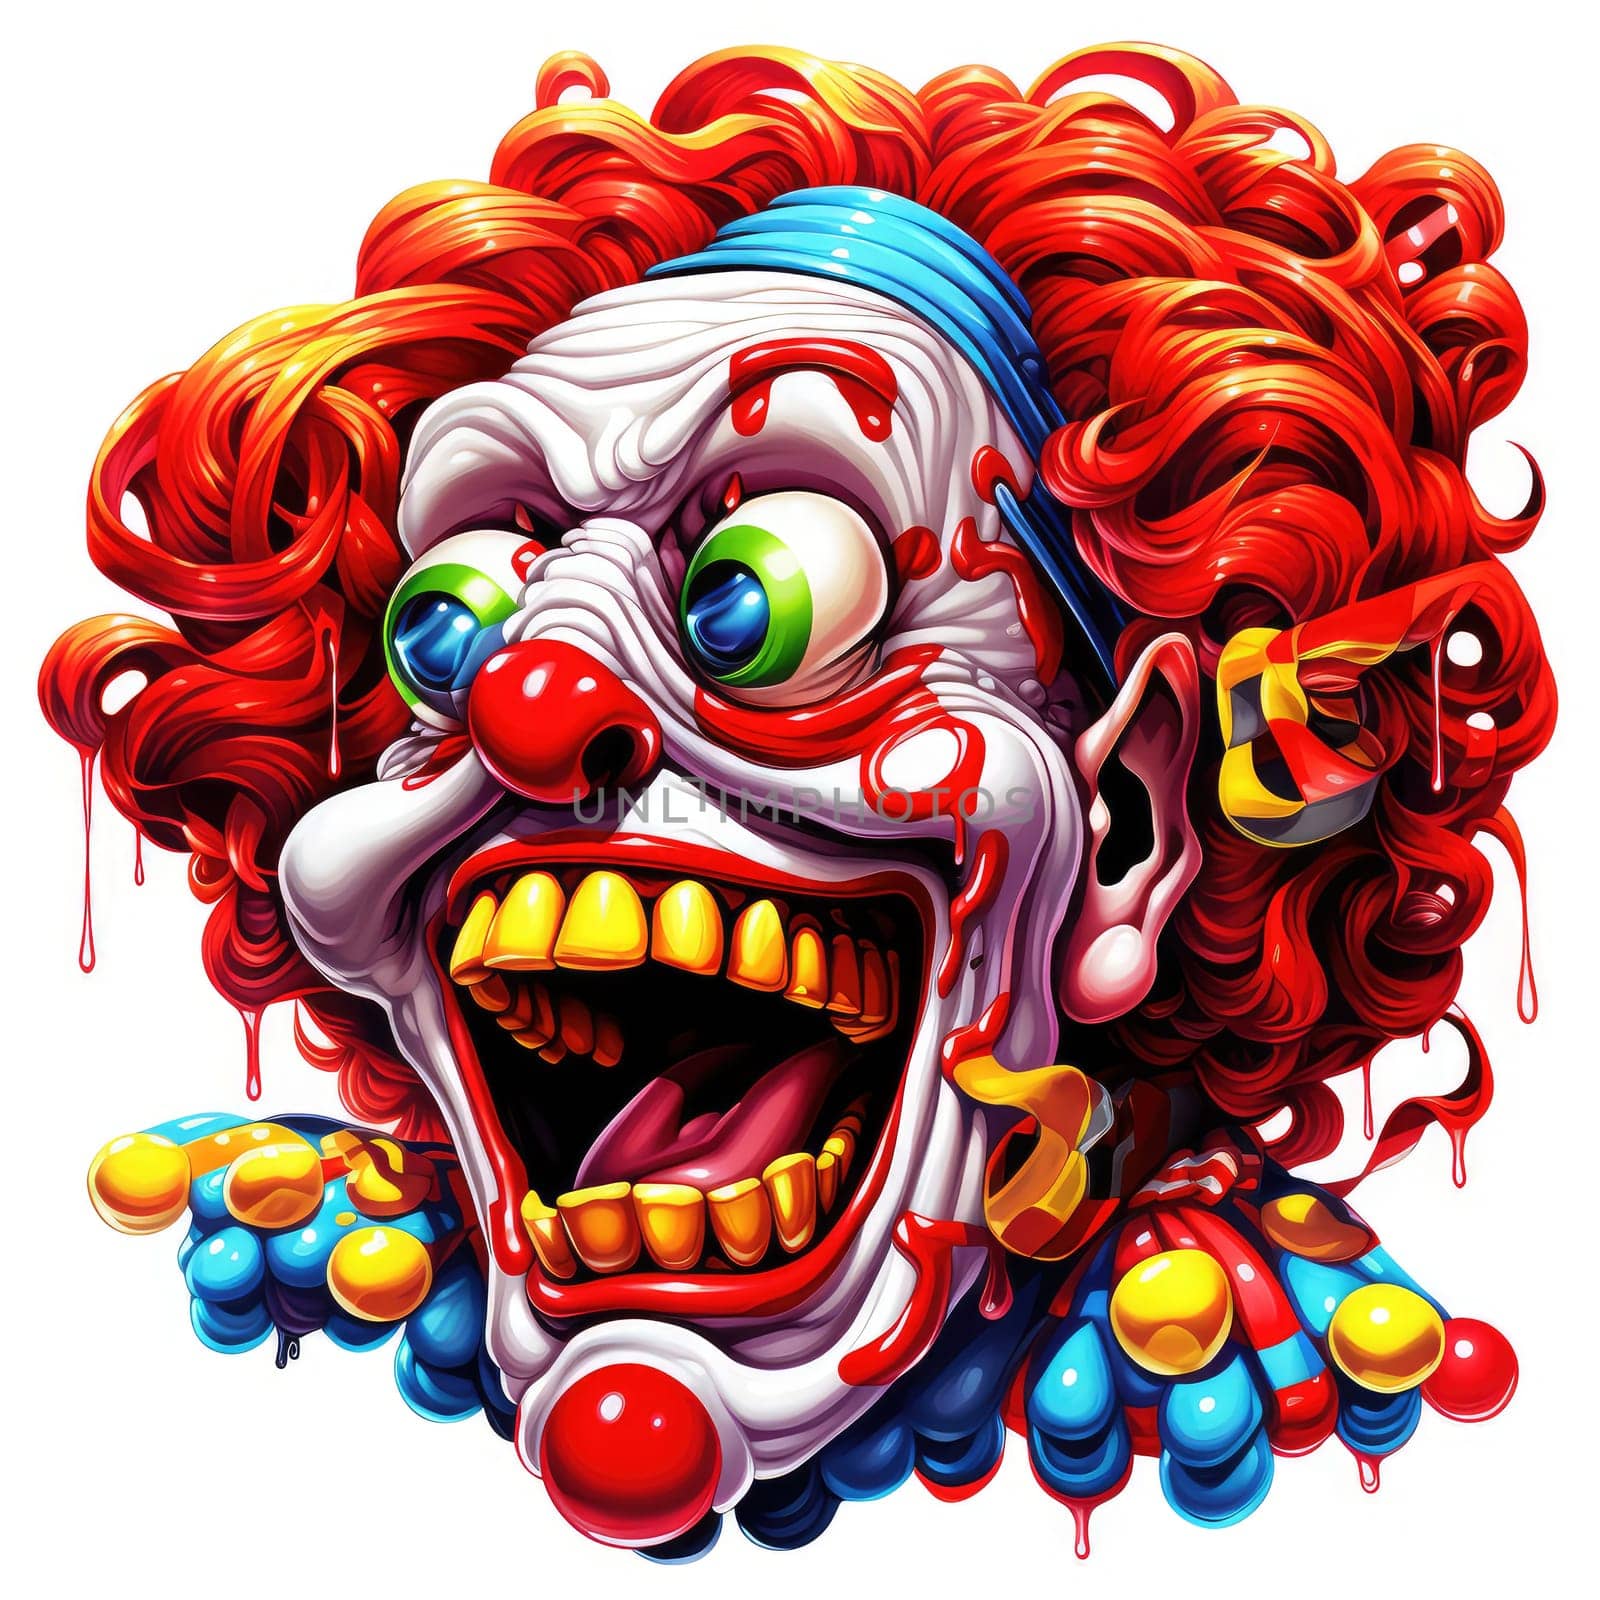 Portrait of clown in psychedelic pop art style by palinchak